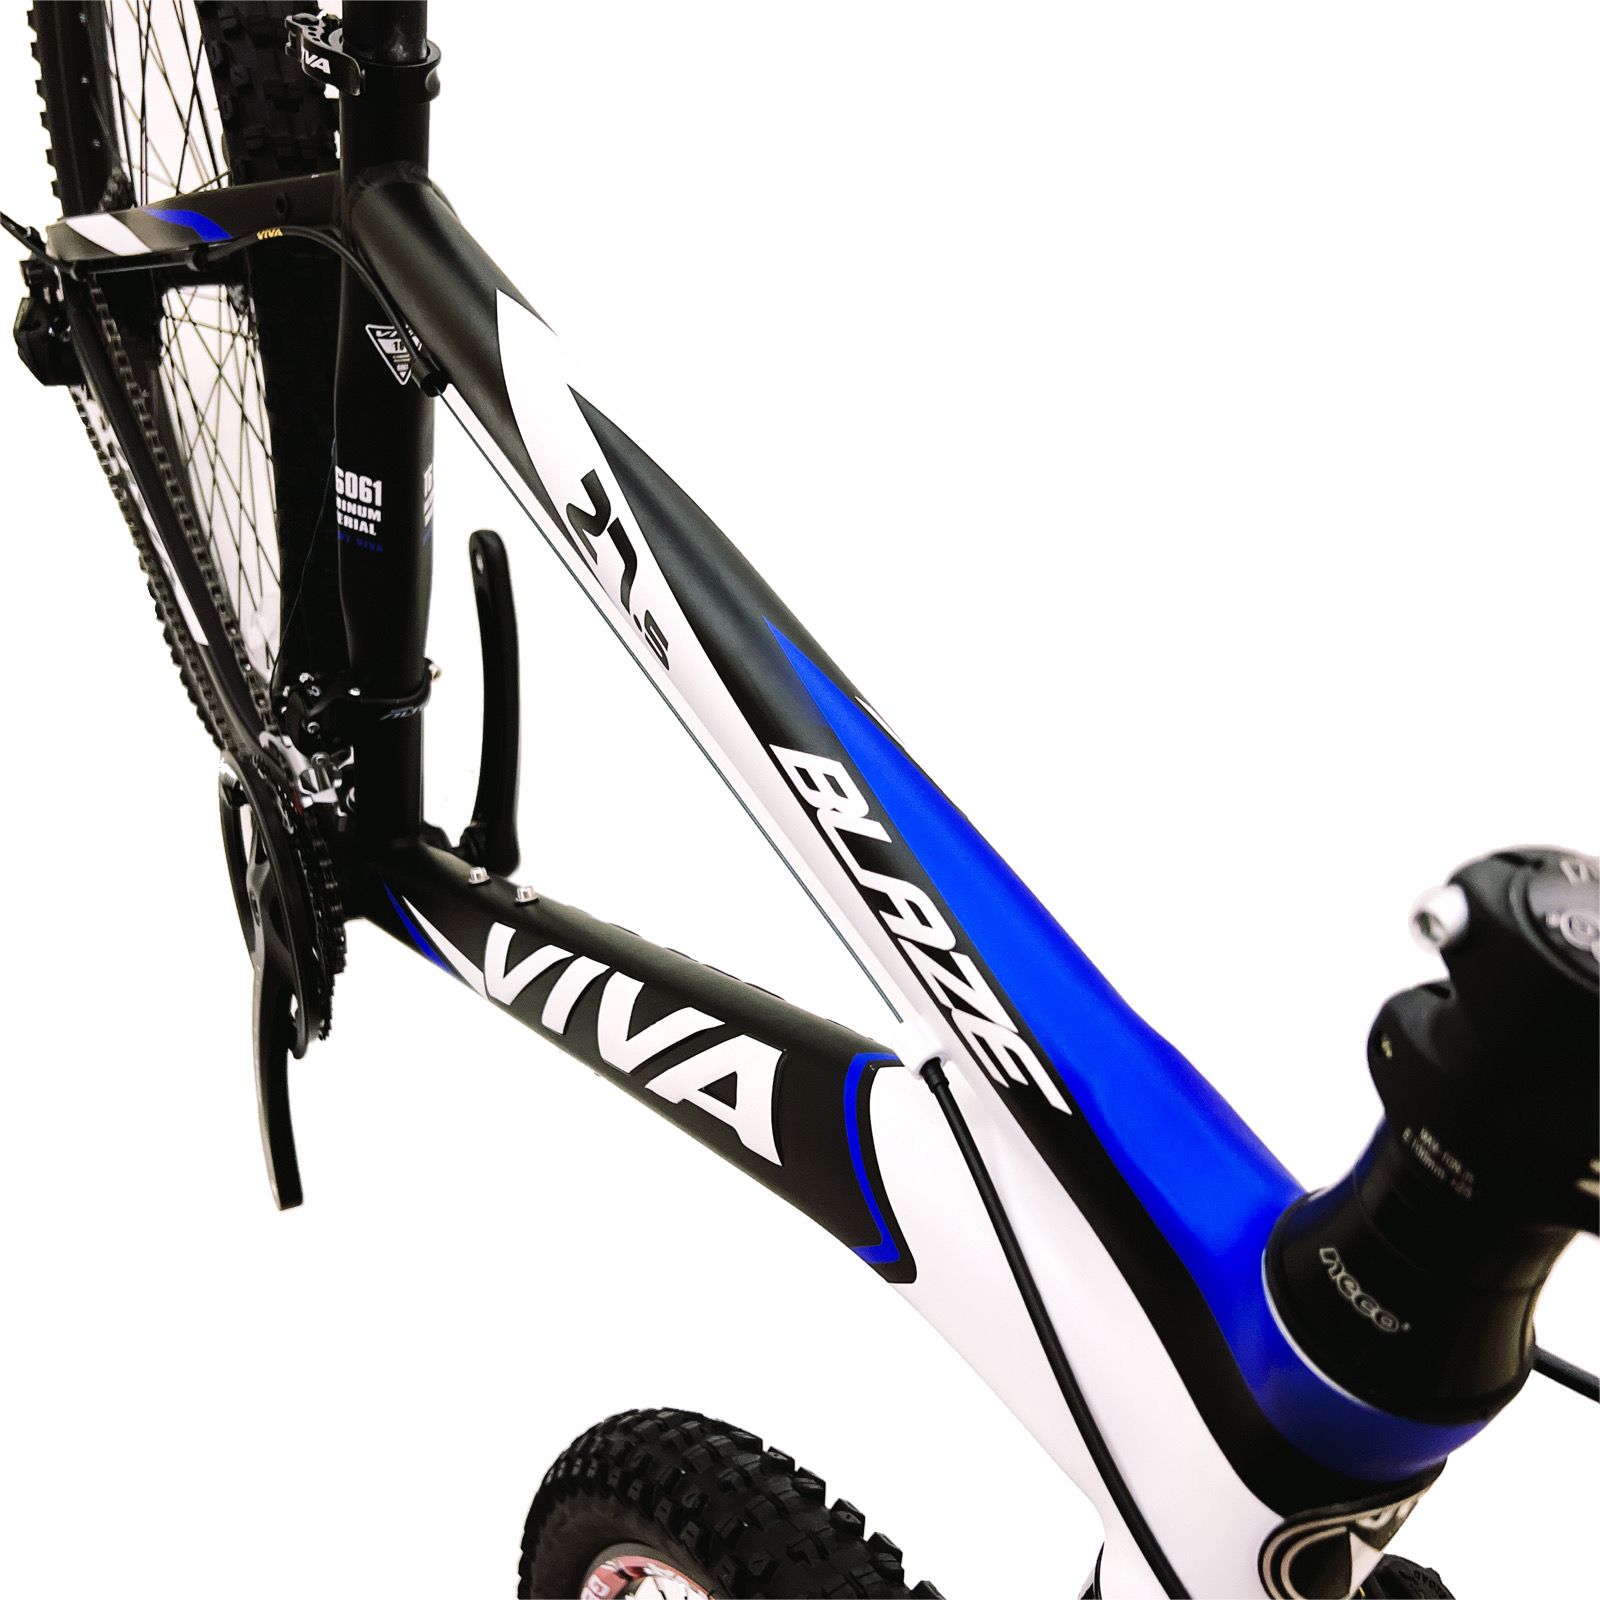 دوچرخه کوهستان ویوا مدل  BLAZE کد 27 سایز 27.5 -  - 8